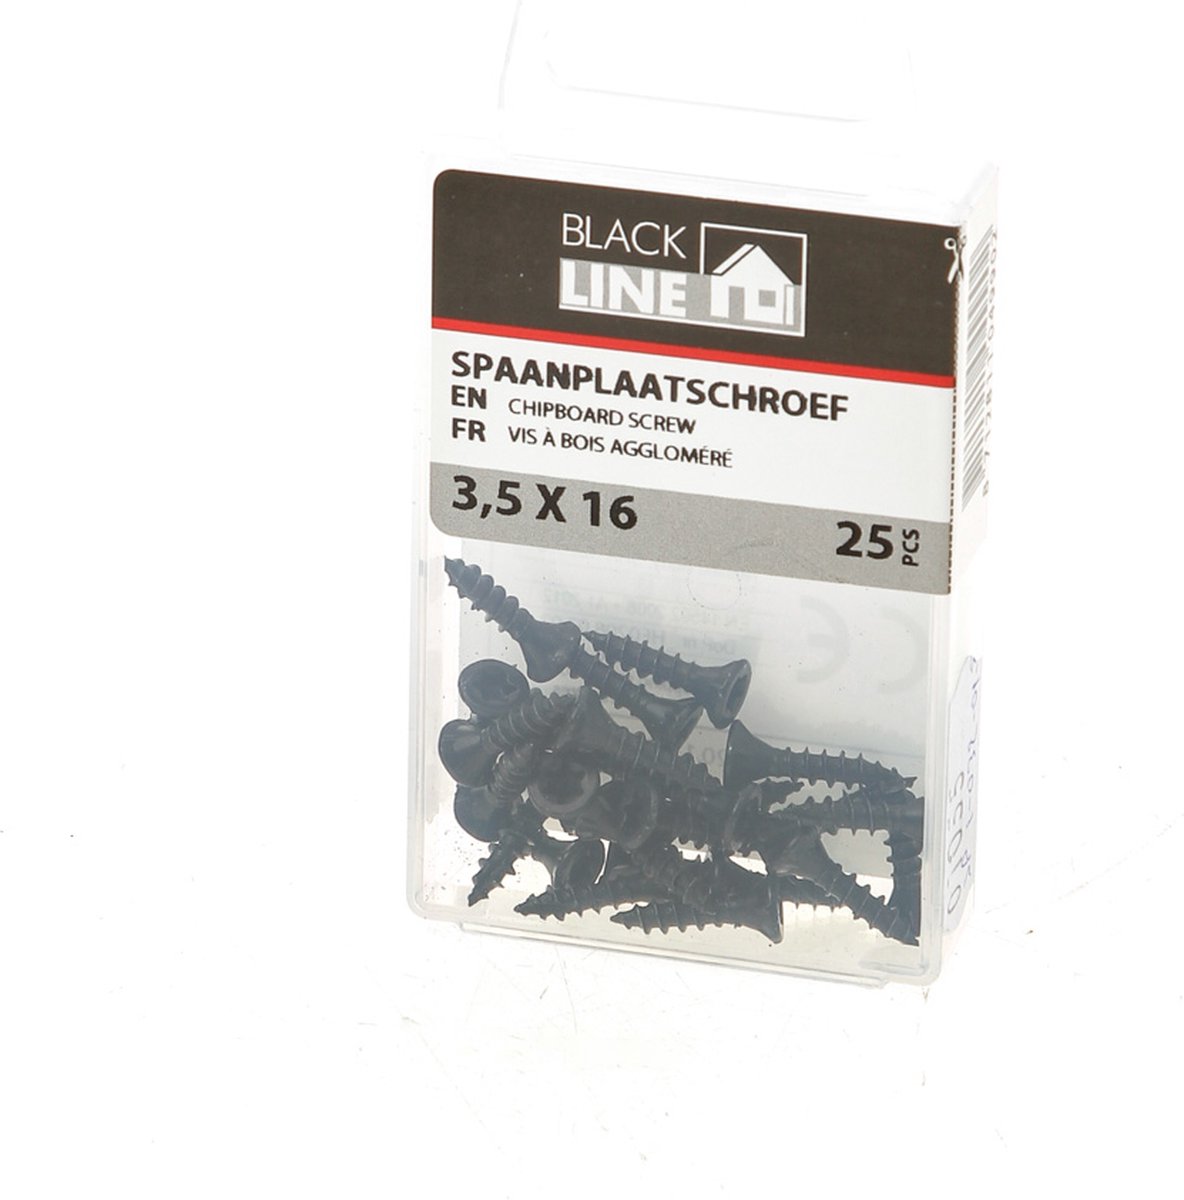 Spaanplaatschroef 3,5 x 16 mm - zwart (25 stuks) - Black Line